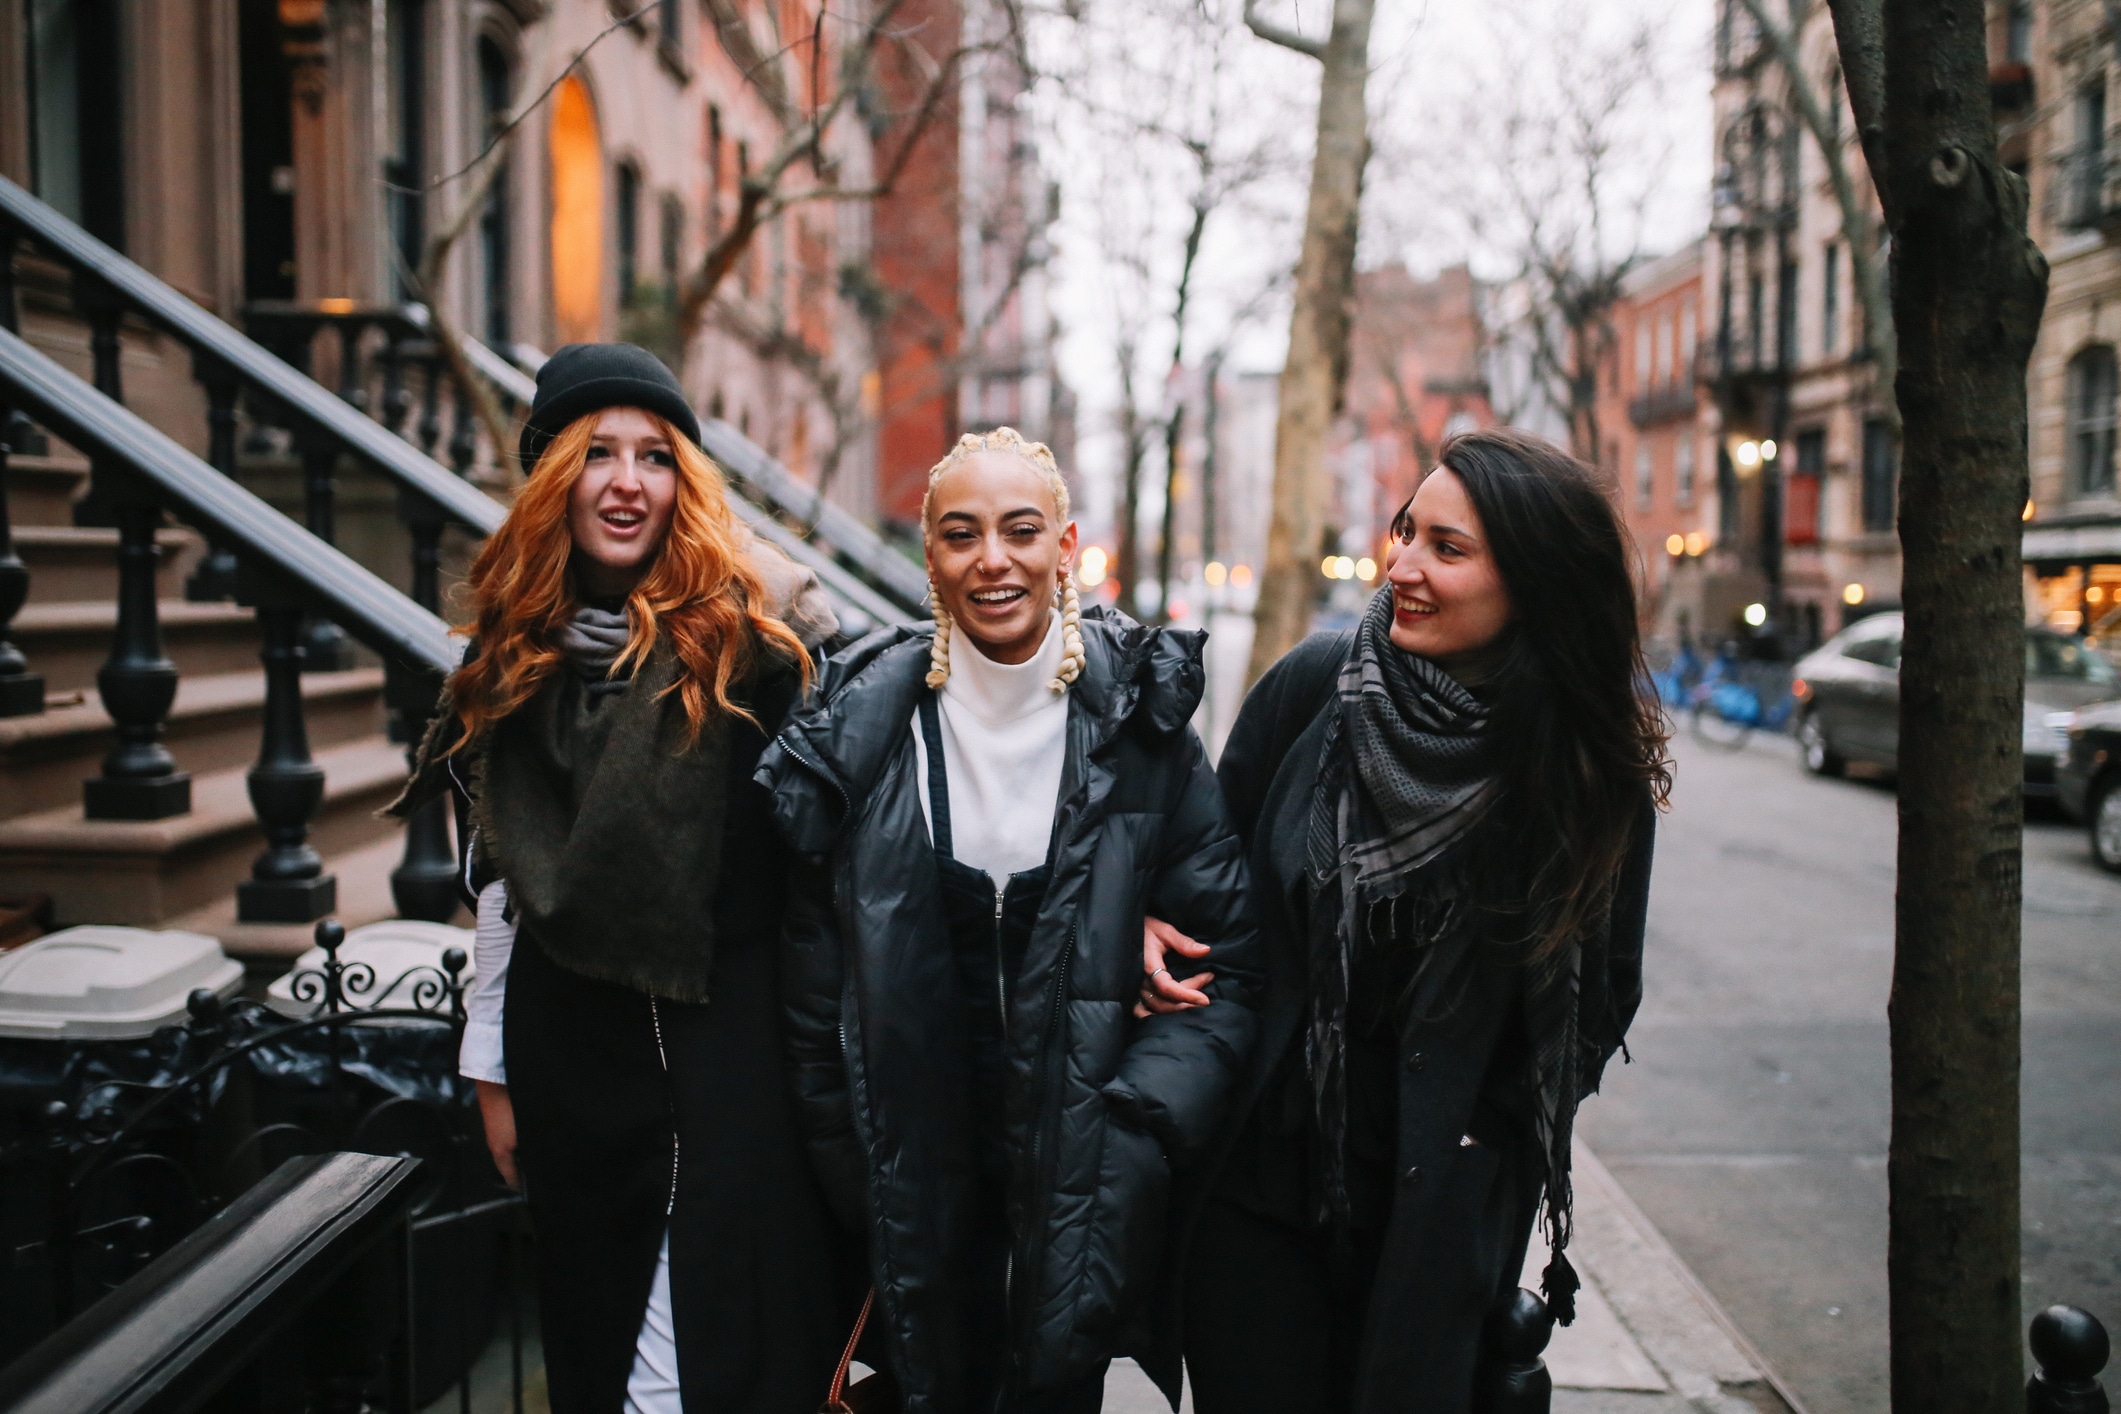  Três amigas sorridentes caminhando em rua urbana ao entardecer